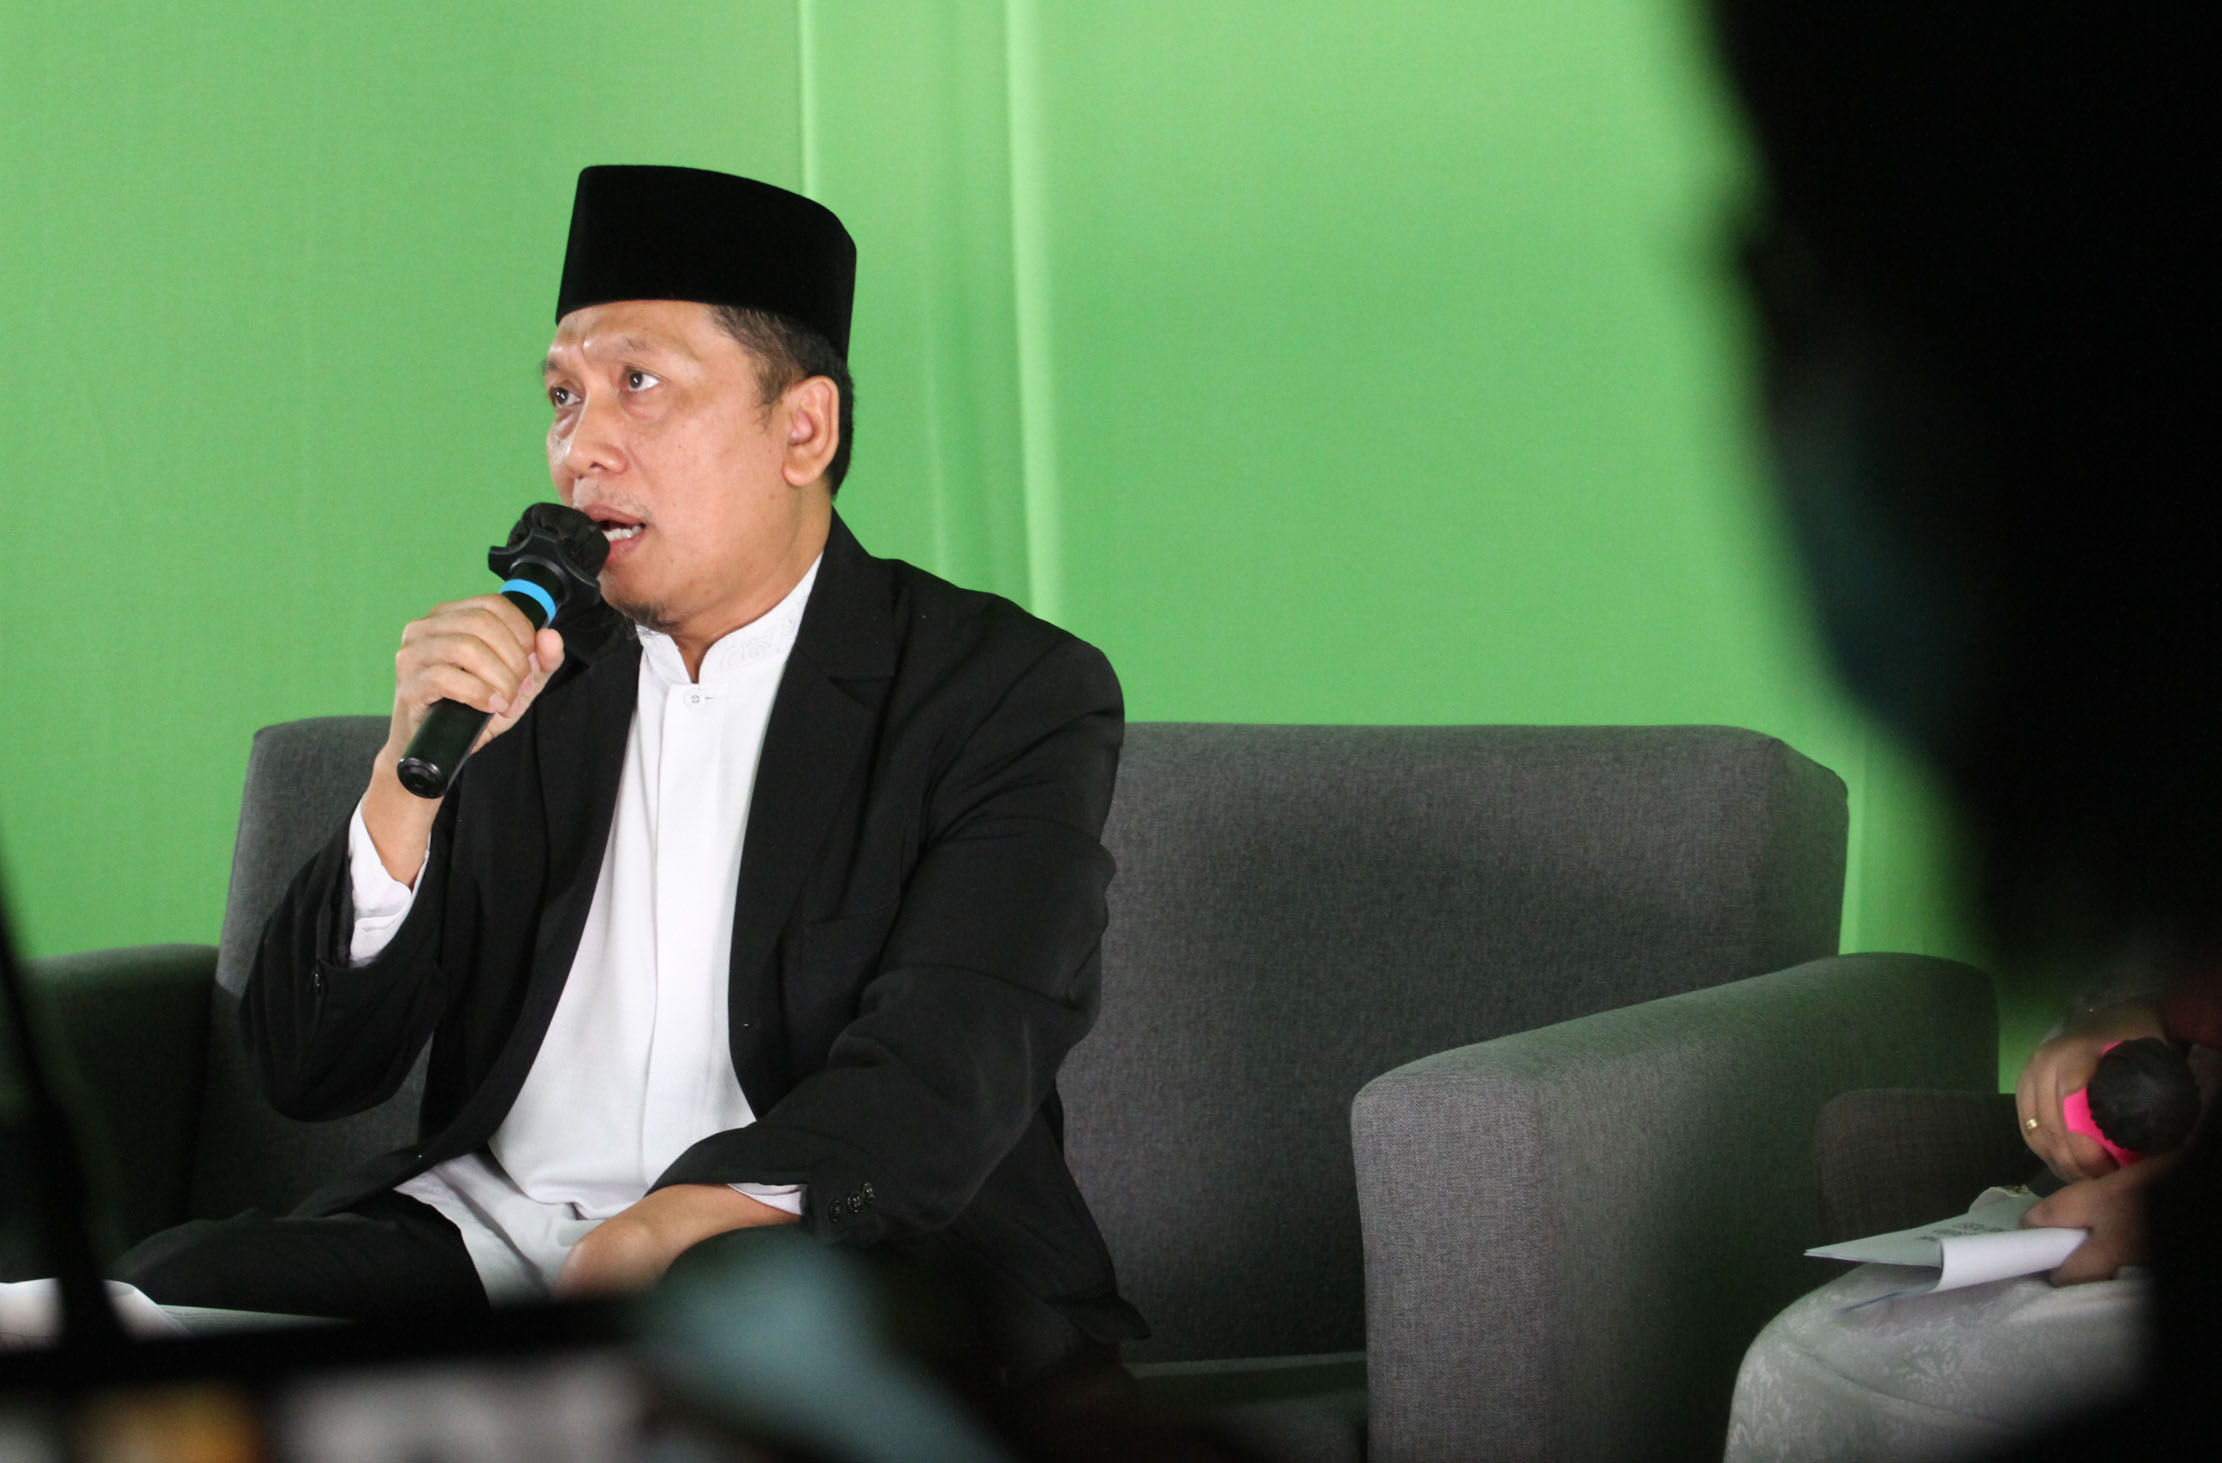 Ketua Dewan Pengawas Syariah HDI Dr. Muhammad Sofwan Jauhari, Lc. M. Ag  dalam acara Talk Show Merintis Bisnis Syariah Bersama HDI. Foto : Panji Asmoro/TrenAsia